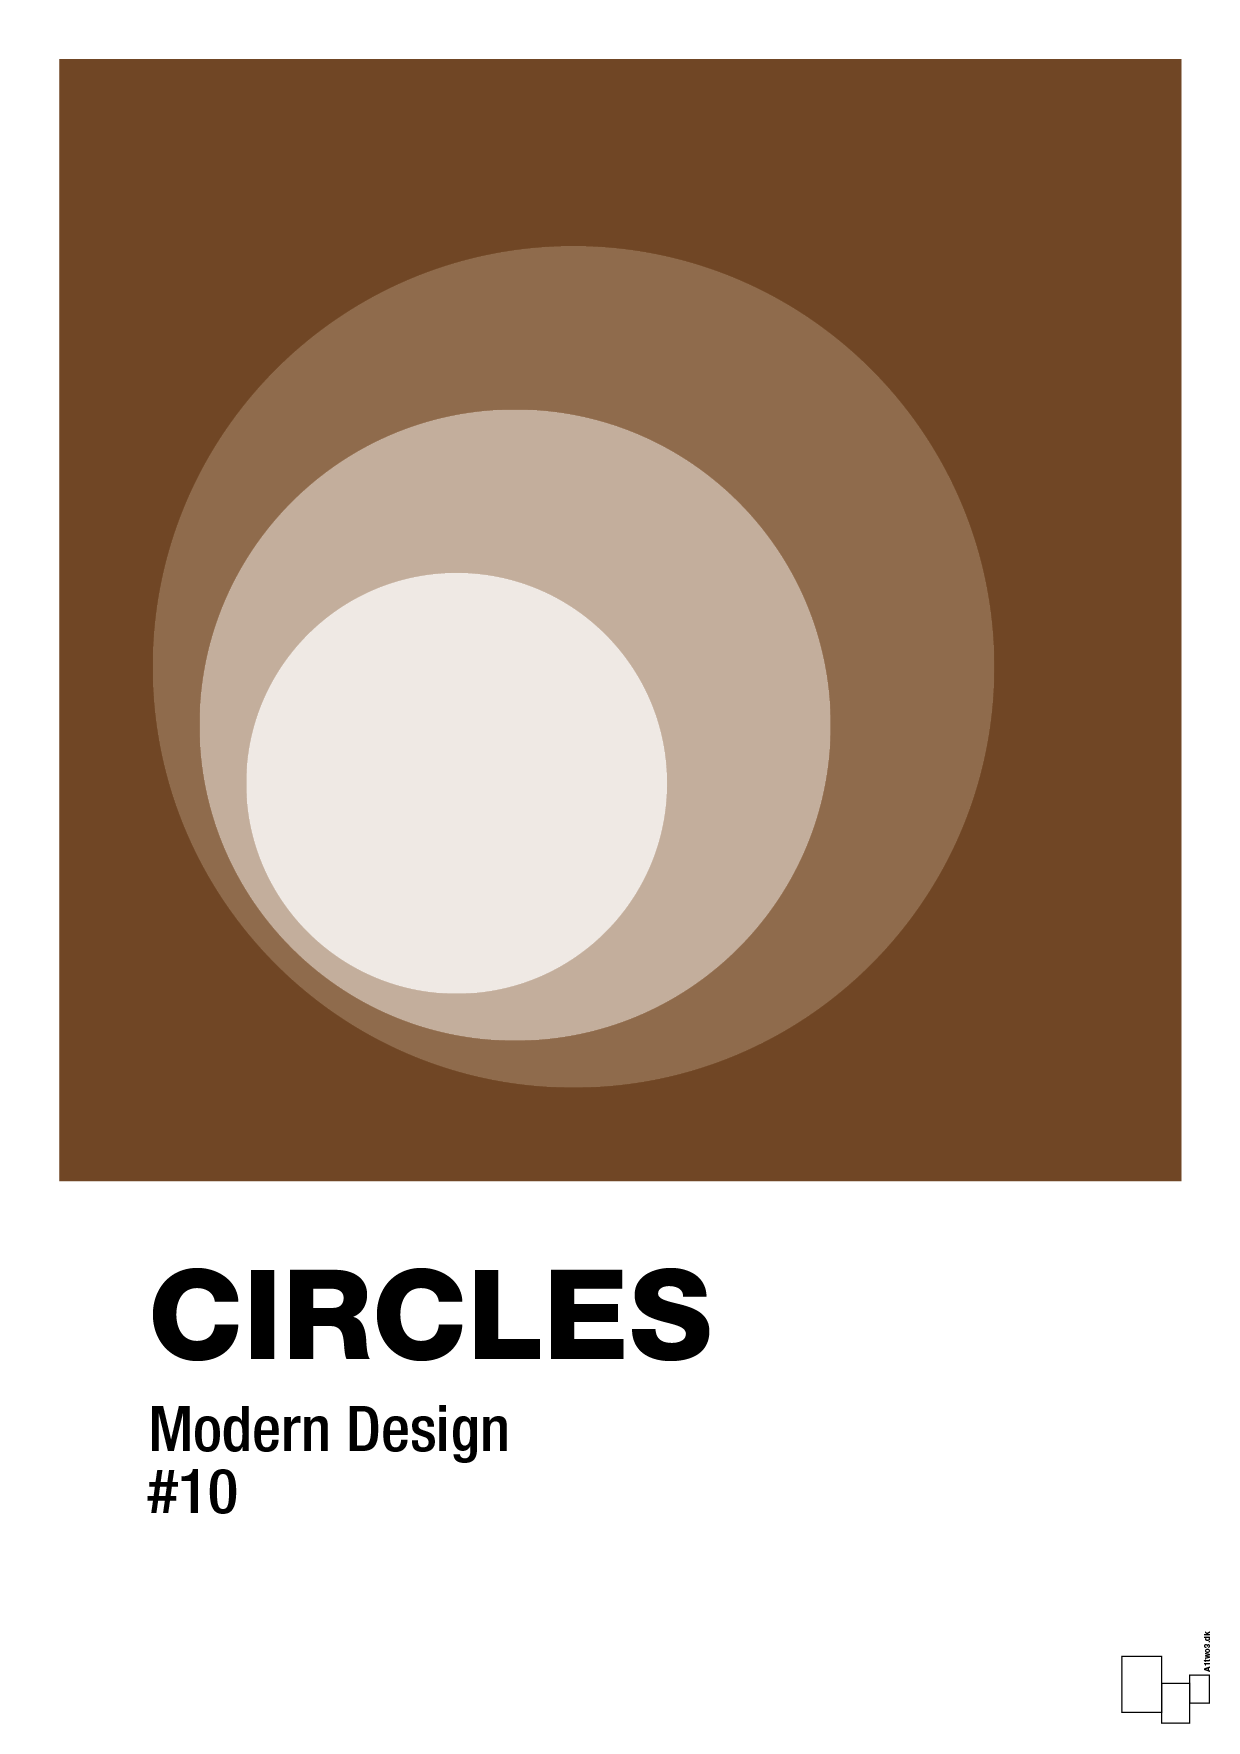 circles #10 - Plakat med Grafik i Dark Brown